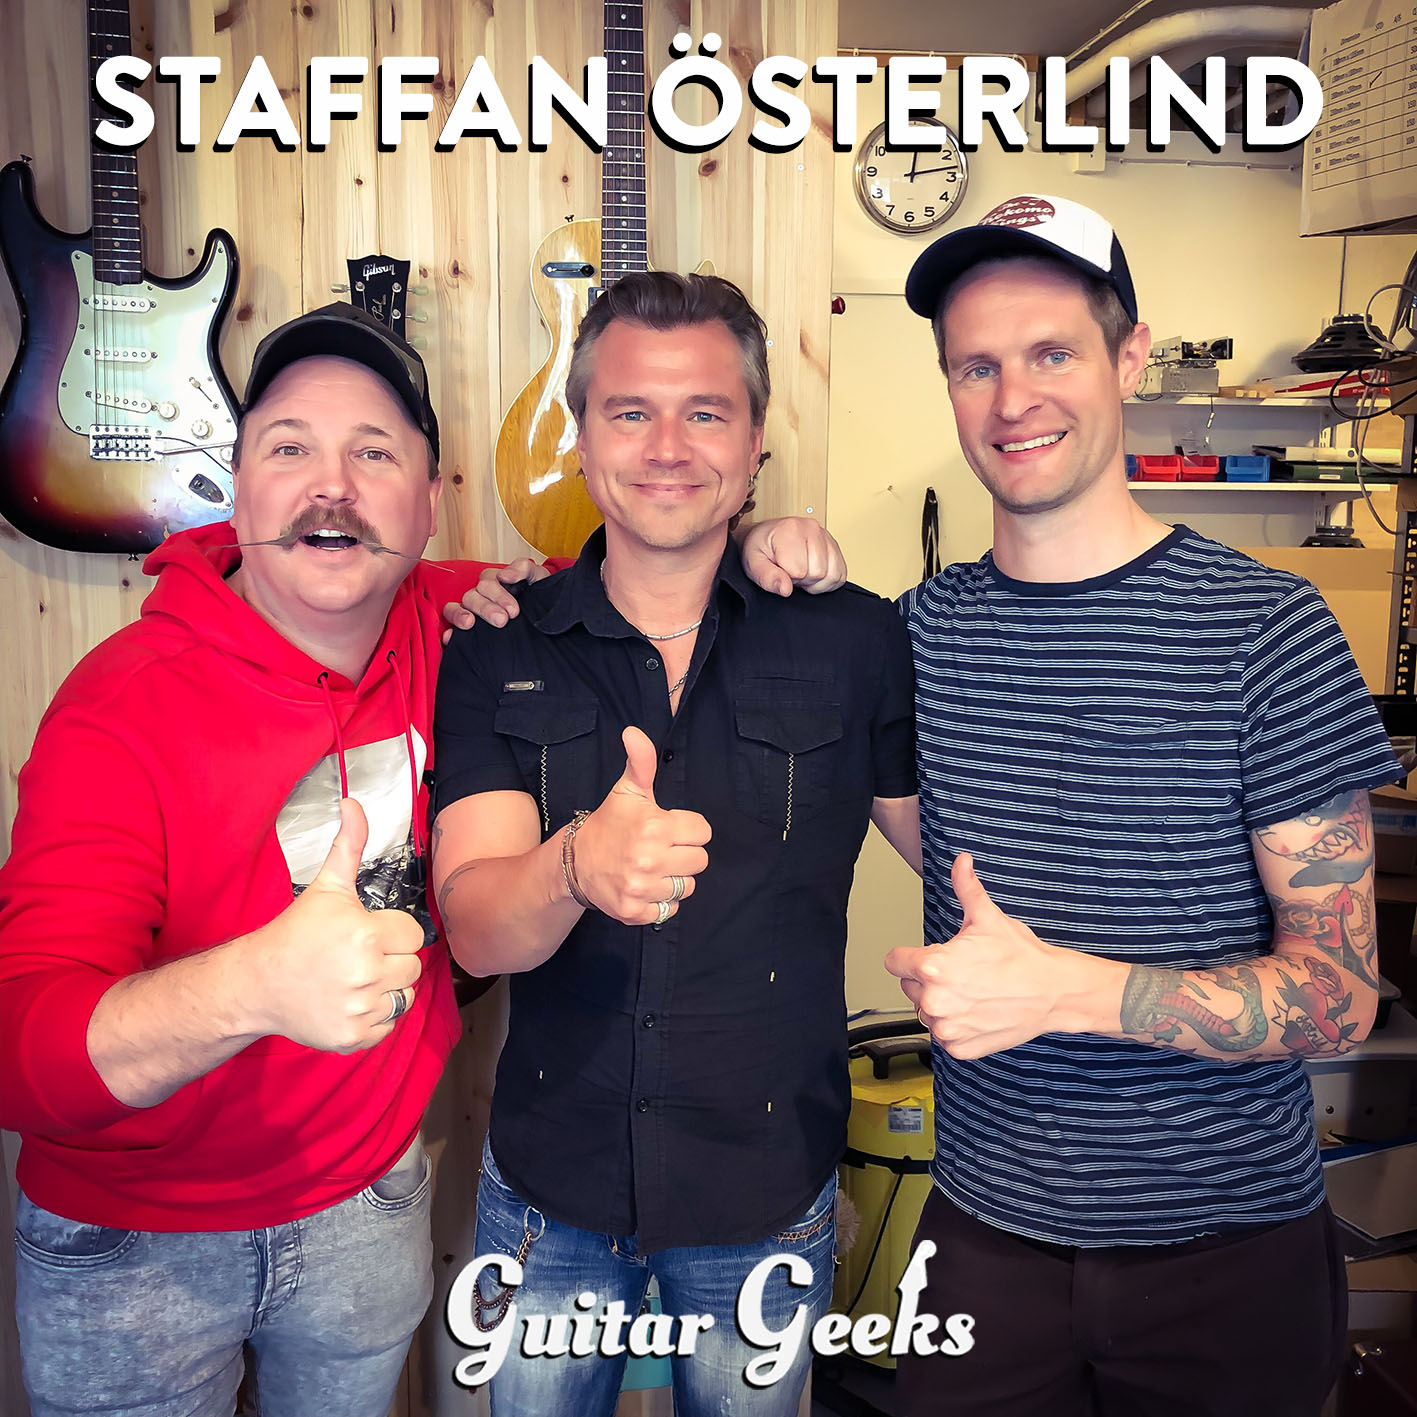 Staffan Österlind with Guitar Geeks Andreas Rydman and Danne Kordelius